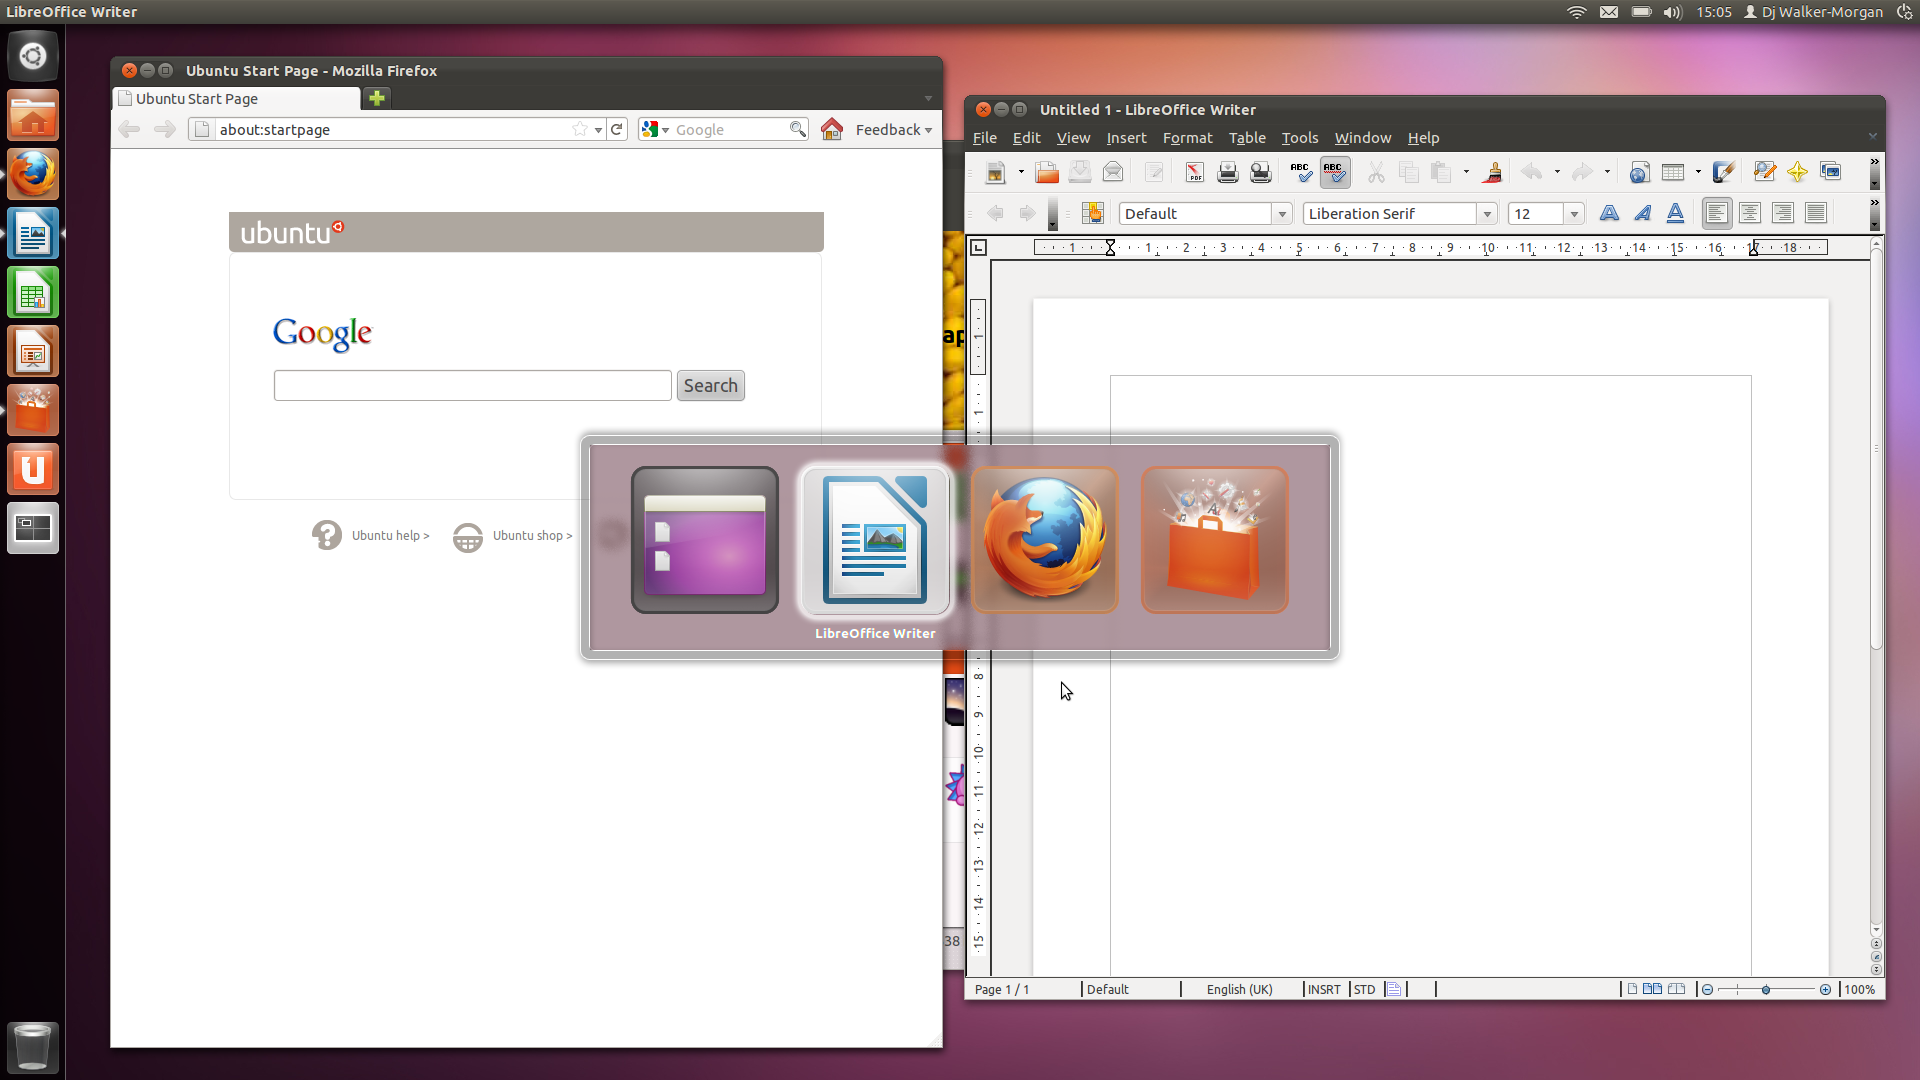 Ubuntu 11.10 Beta 1